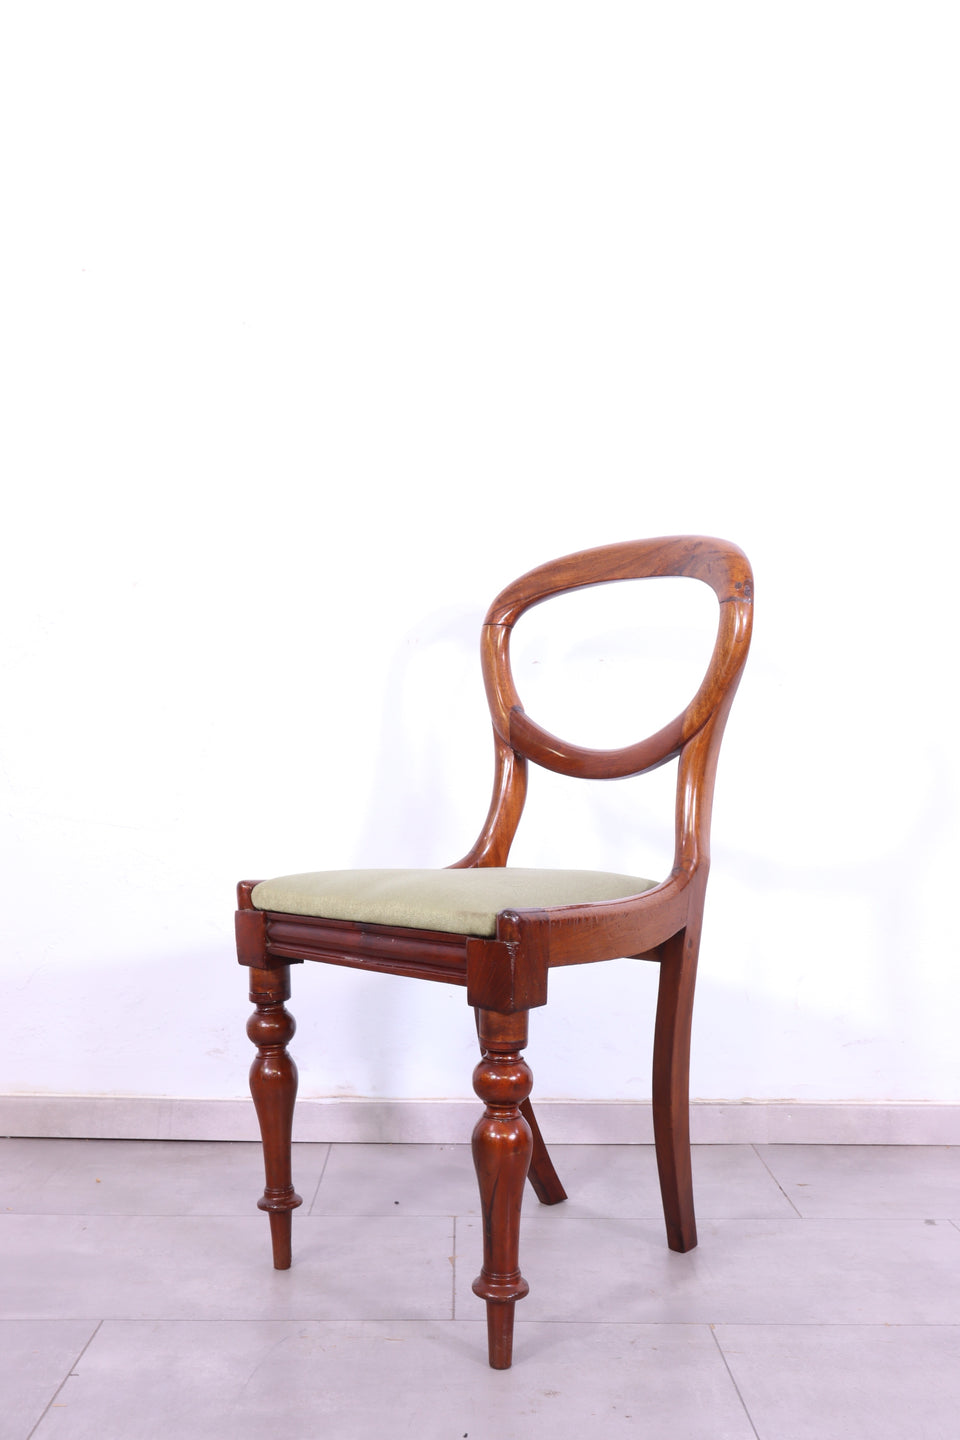 Traumhafter Louis Philippe um 1880 Biedermeier Stuhl Antik Sekretär Stuhl 2 von 2